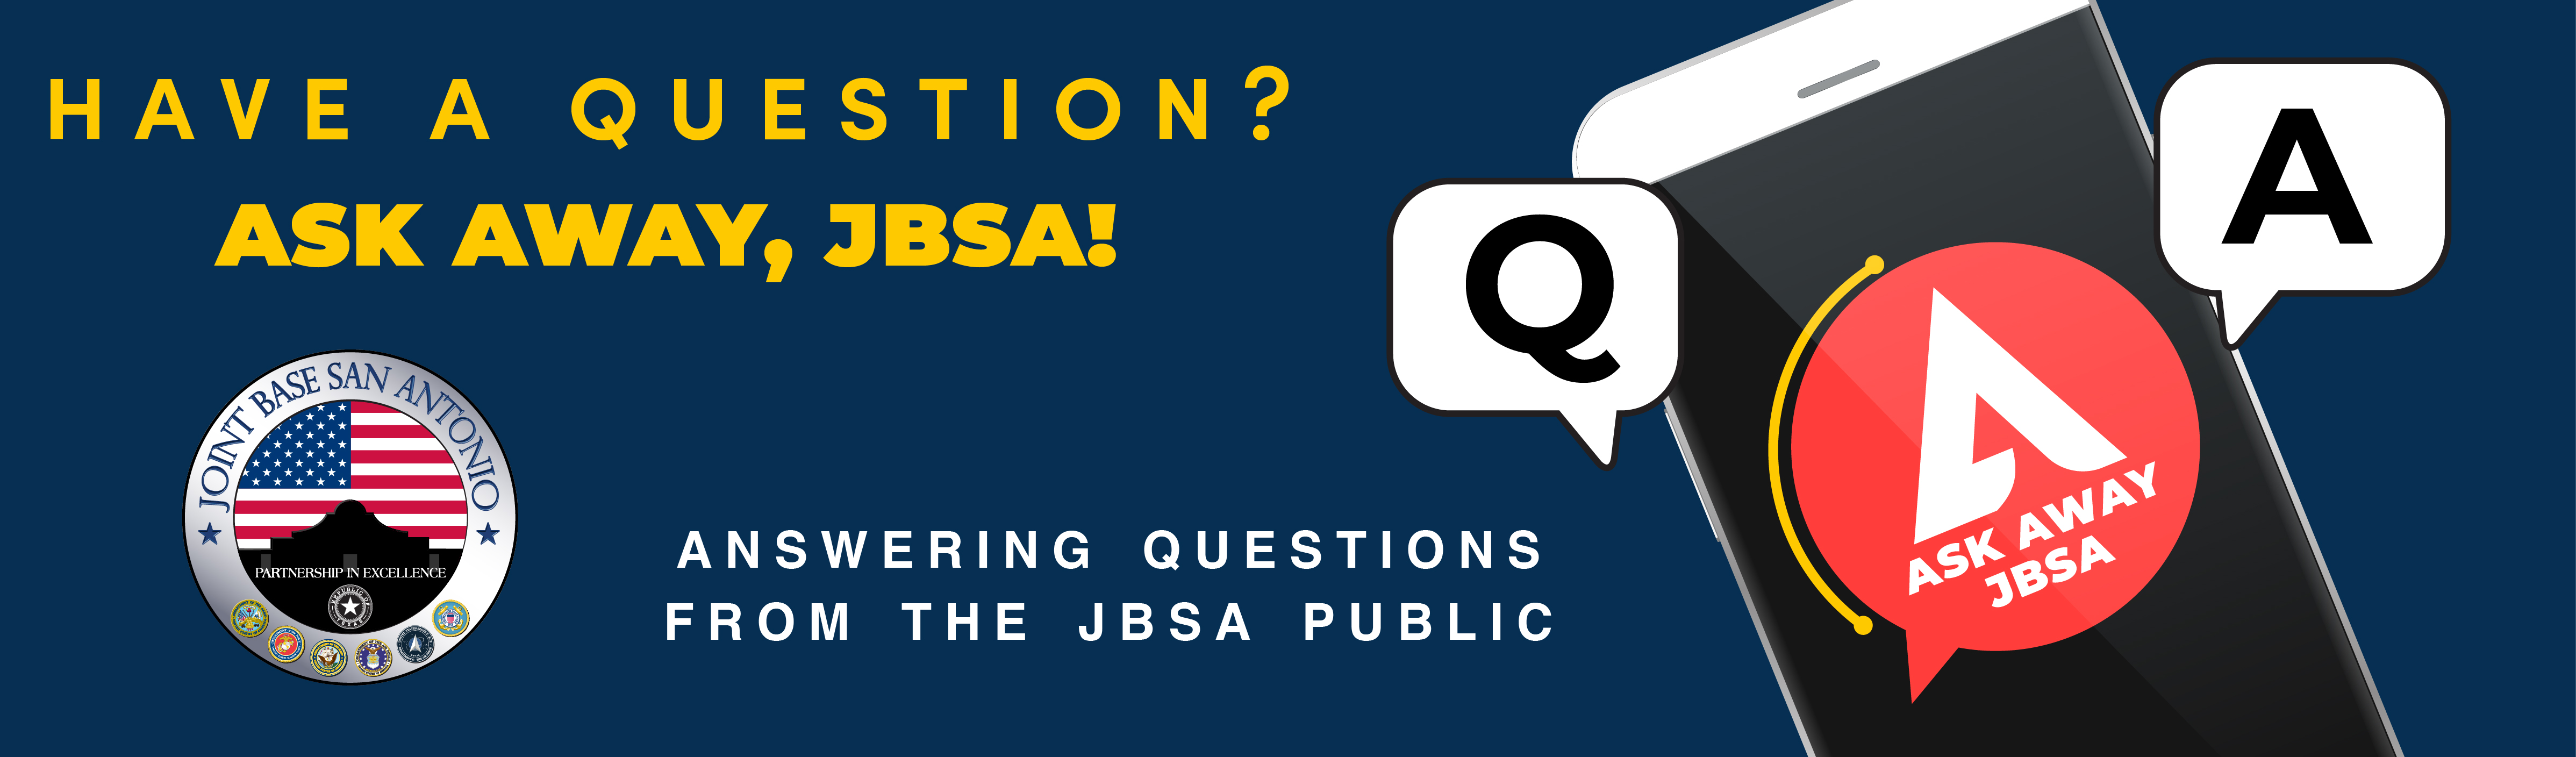 Ask Away, JBSA